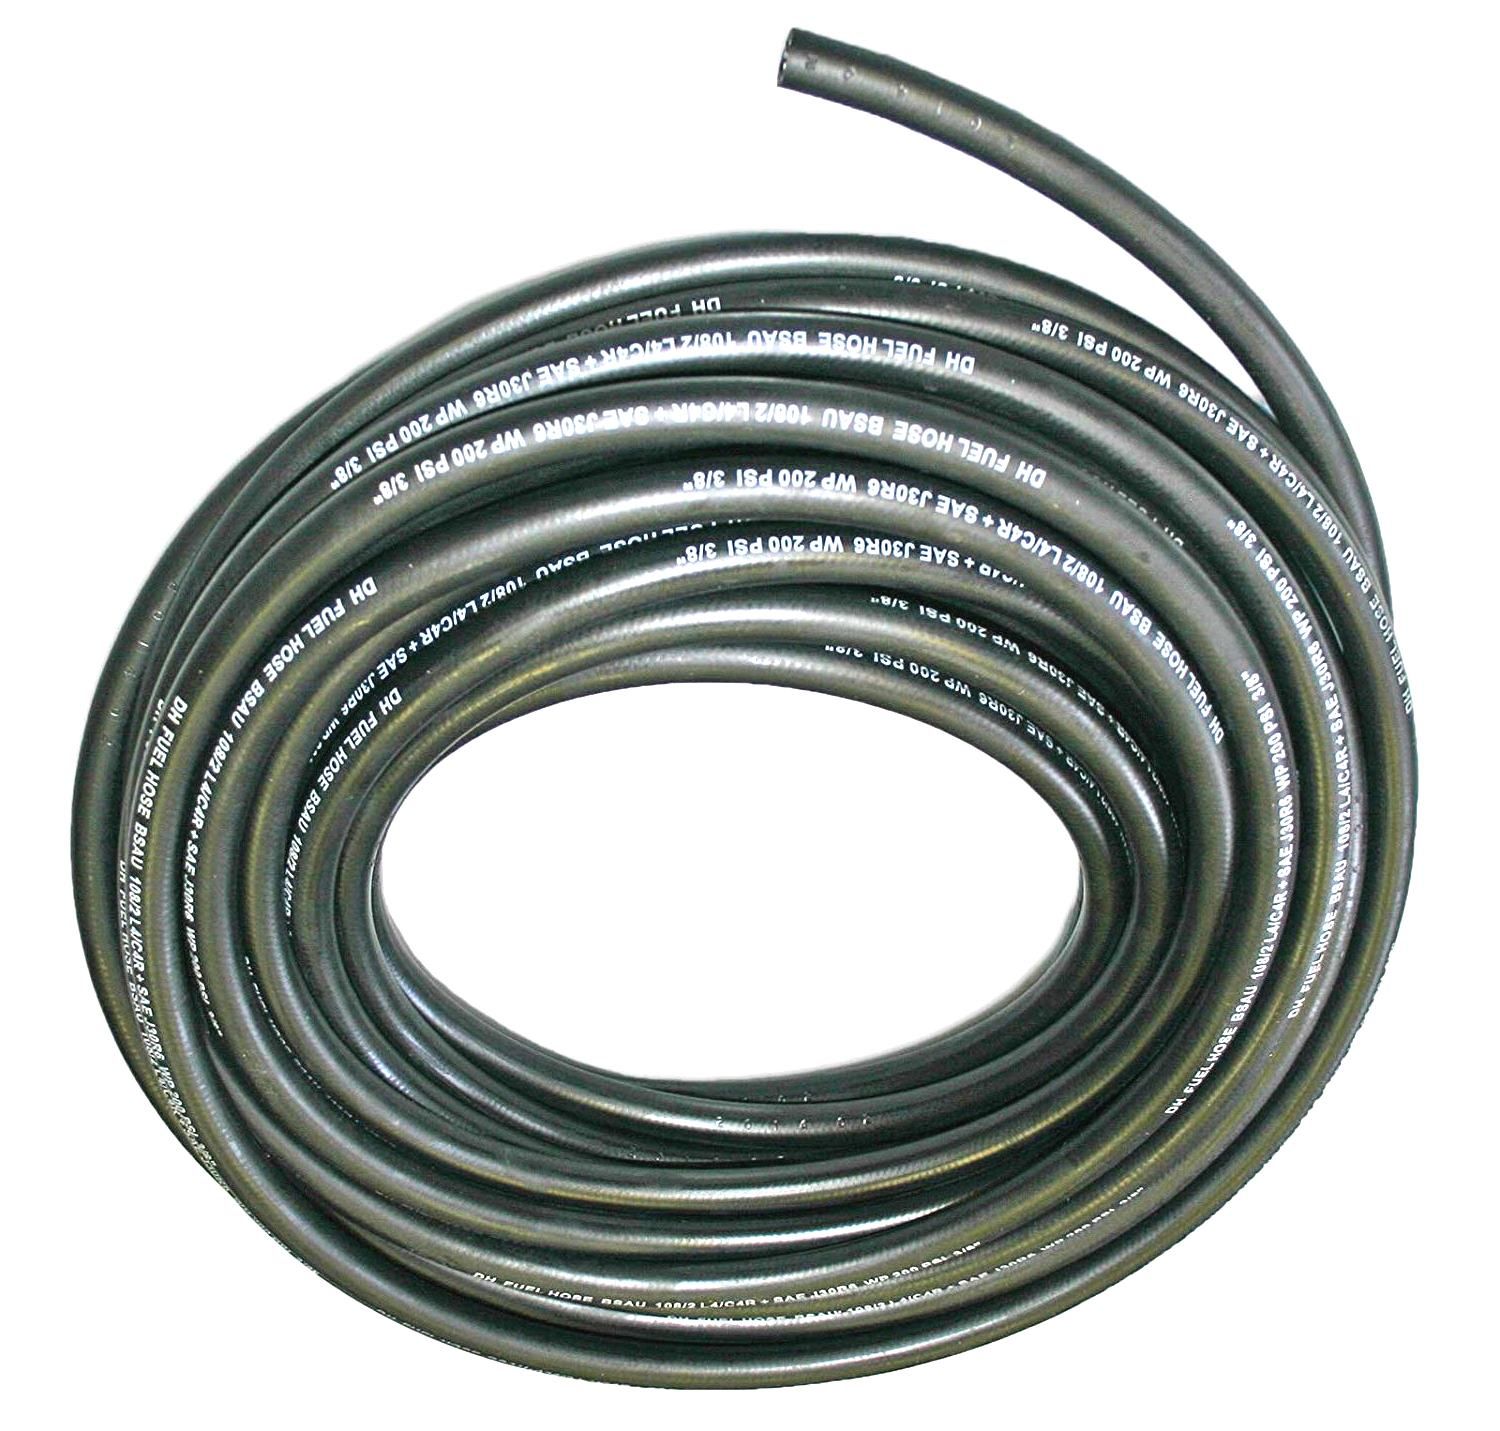 Palivová hadička gumová,délka:1m,vnější průměr:6mm,vnitřní průměr:3mm